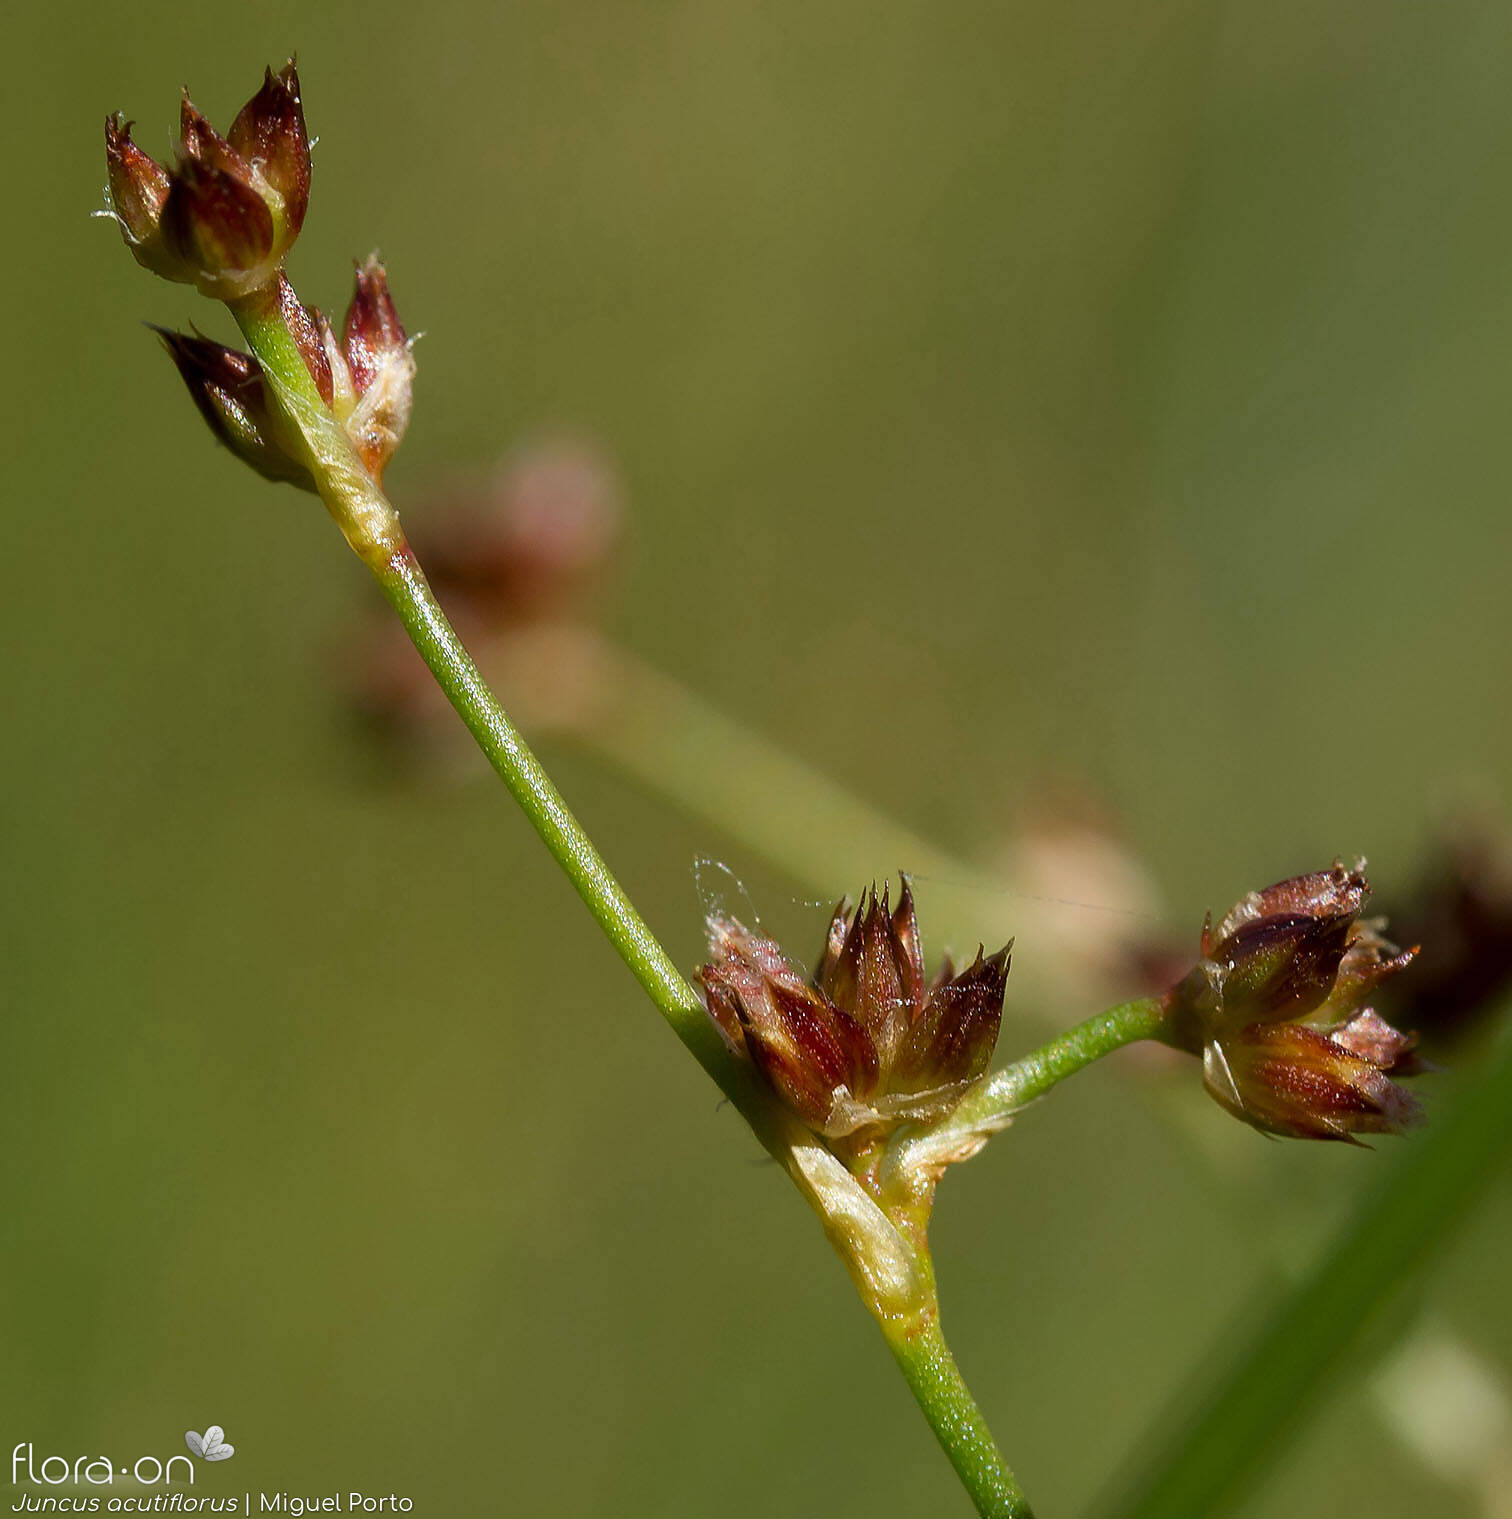 Juncus acutiflorus - Flor (close-up) | Miguel Porto; CC BY-NC 4.0